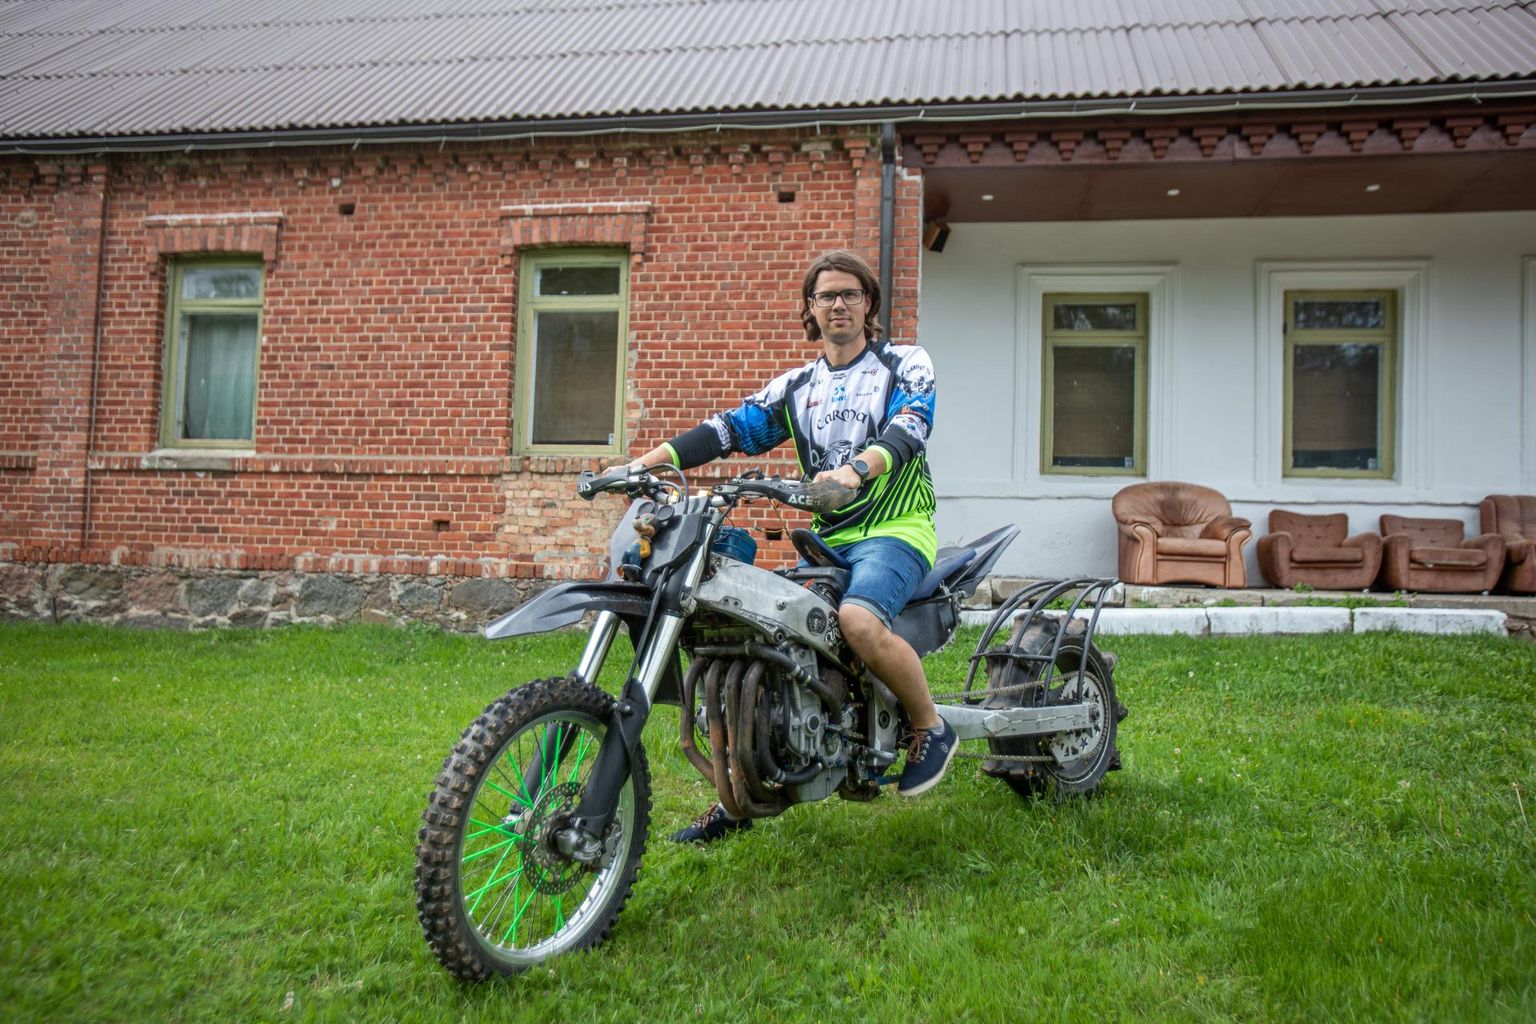 Tõrva abivallavanem Lauri Drubinšil on Valga motoklubi Carma hoones neli mootorratast: kaks mäkketõusu, üks enduuro ja üks päevasõidu oma. See ei tähenda siiski hiiglaslikke kulusid, näiteks üks mäkketõusuratas on ehitatud avarii teinud mootorrattast, mis maksis omal ajal 400 eurot.